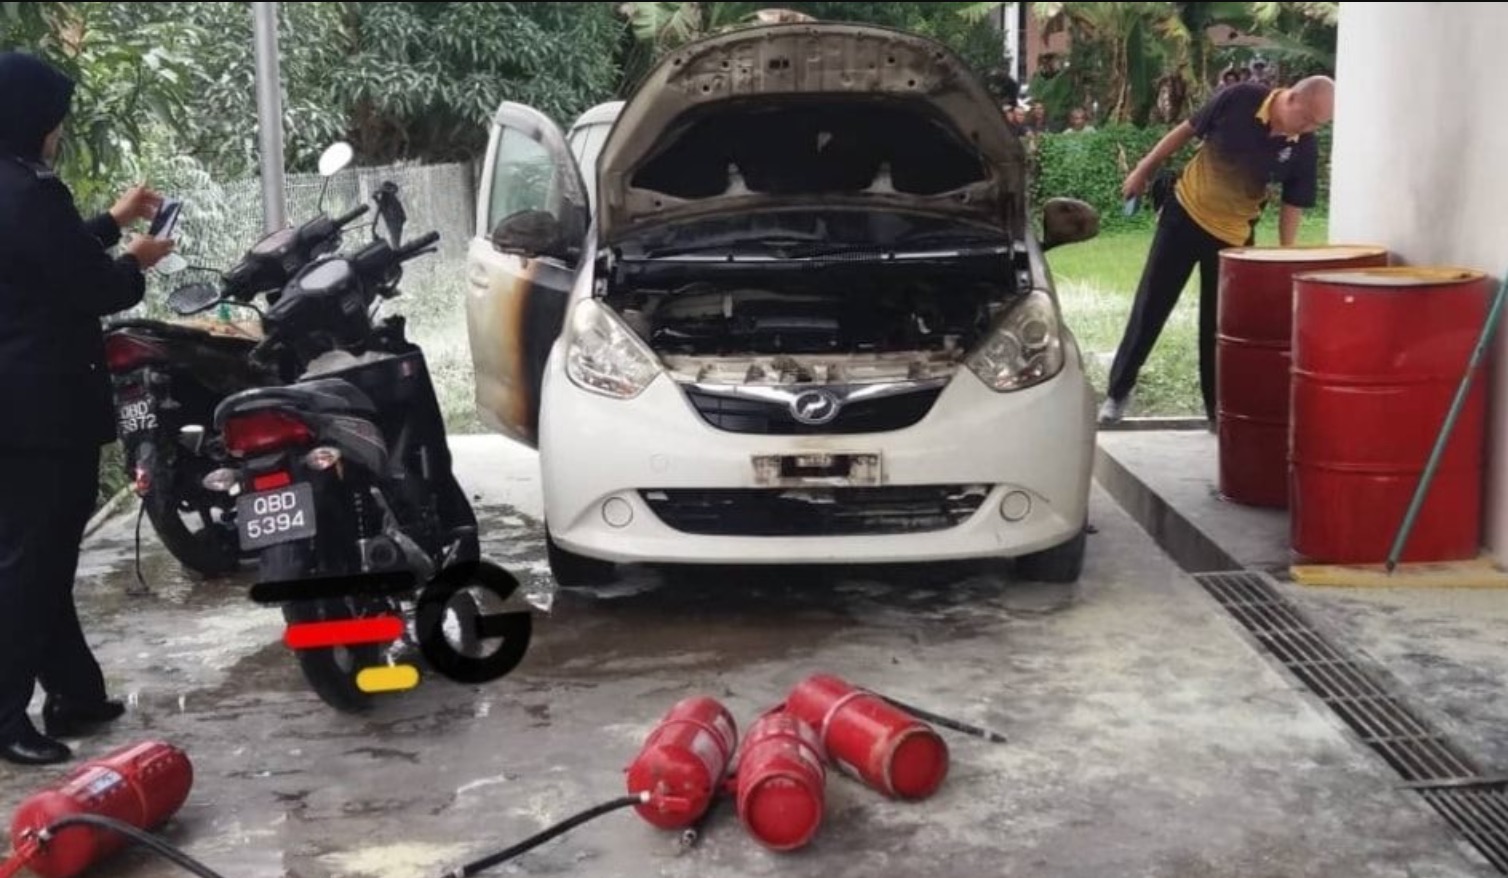 sajagempak.com - Berang Dituduh Tidak Membayar Petrol, Lelaki Bertindak Membakar Kereta Dan Motosikal Di Stesen Minyak